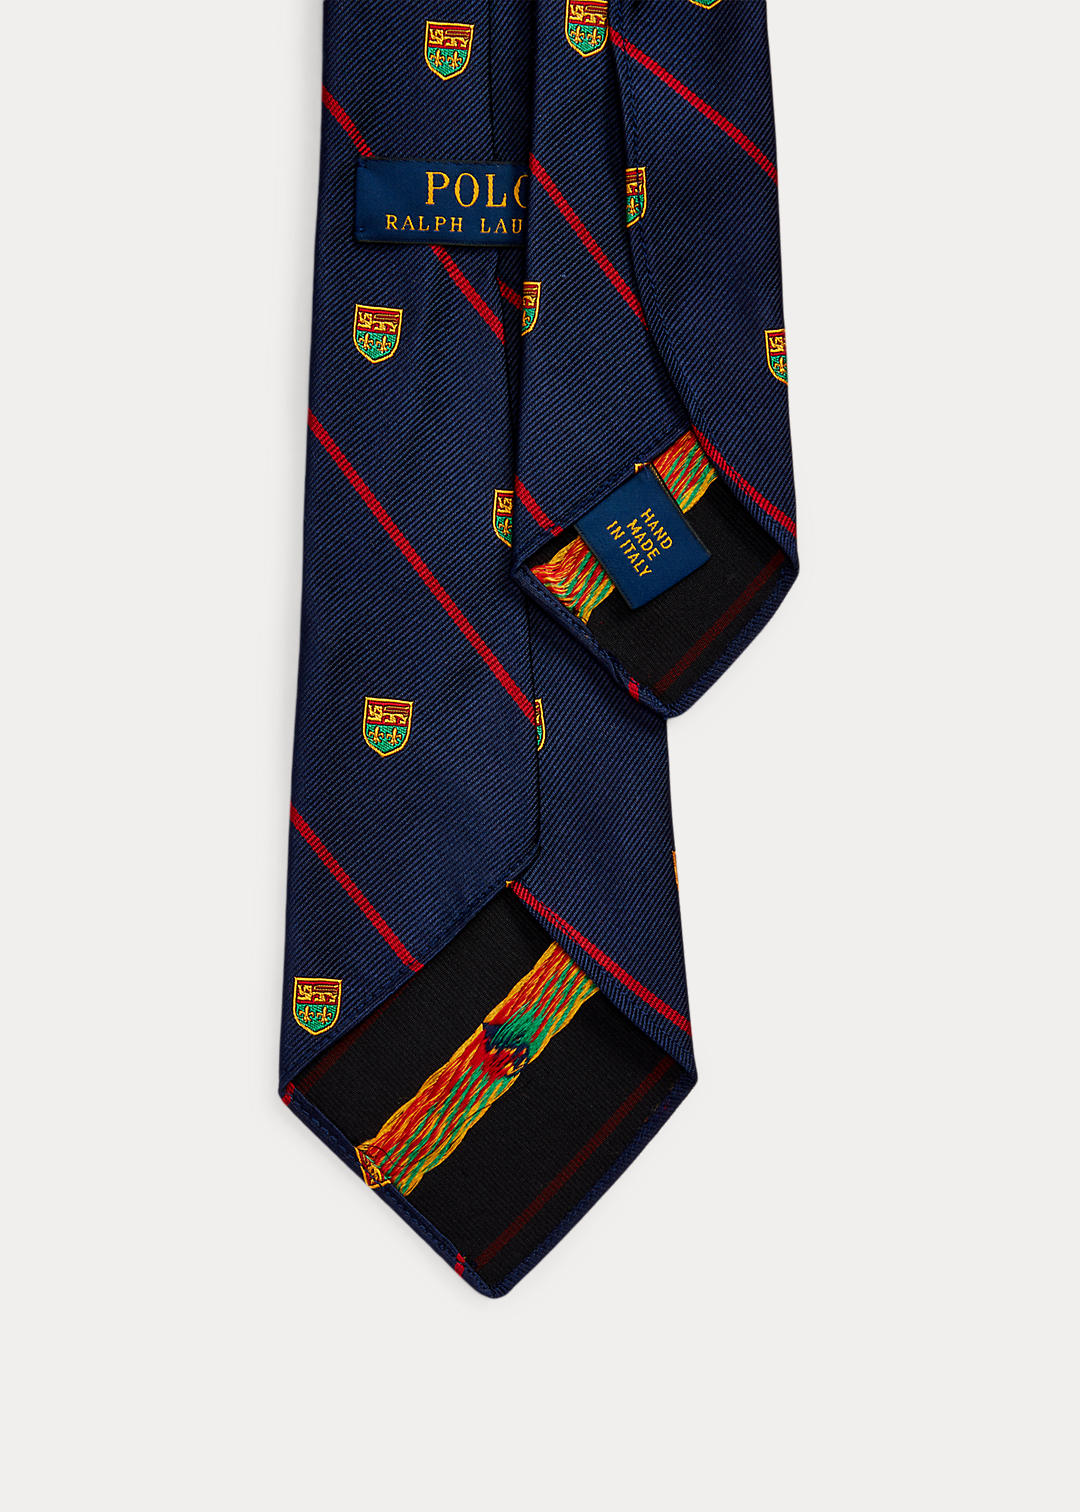 Polo Ralph Lauren Vintage-Inspired Striped Silk Club Tie 2